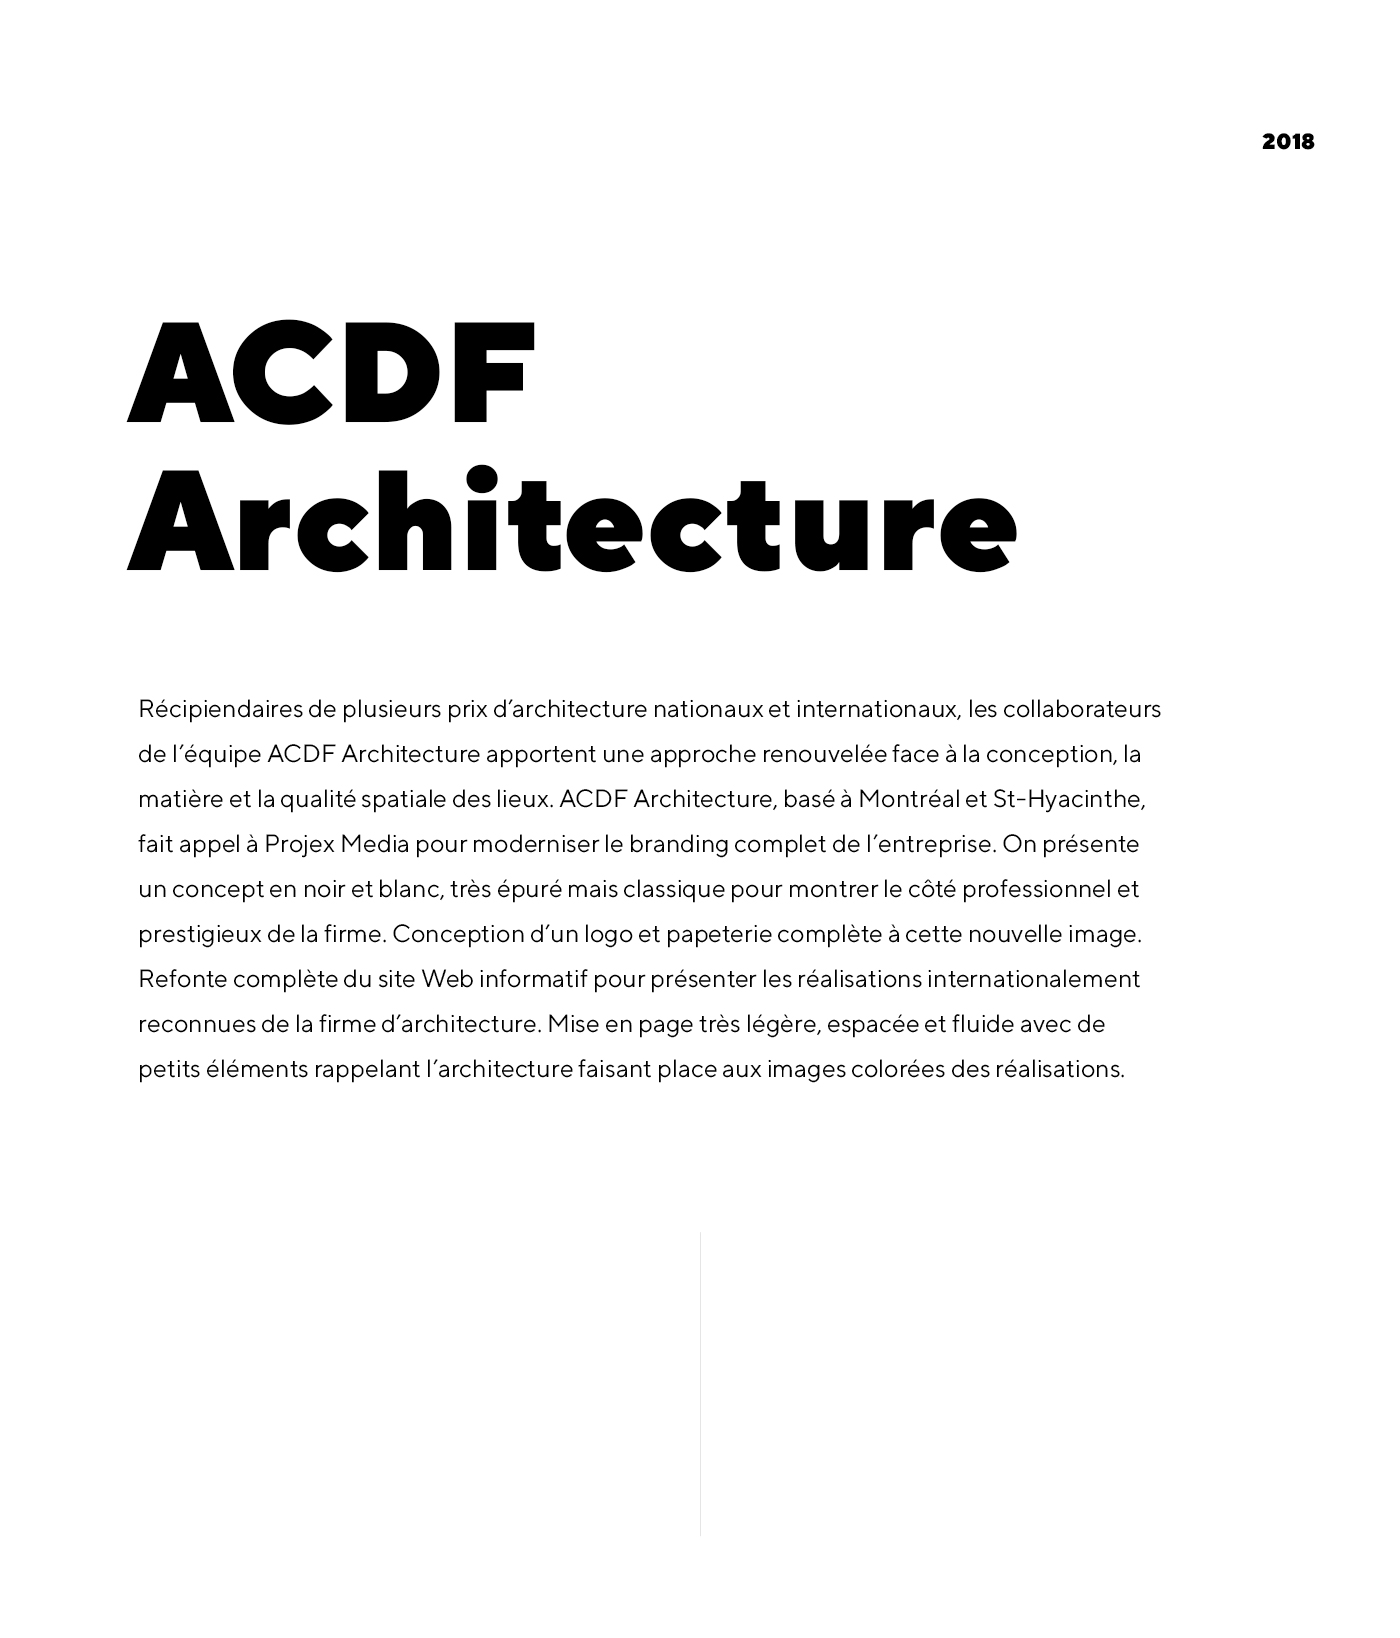 Conception de carte d'affaire, logo, papeterie et site web bilingue pour ACDF Architecture - firme d'architectes basé à Montréal et St-Hyacinthe / 2018 - Réalisation signée Projex Media